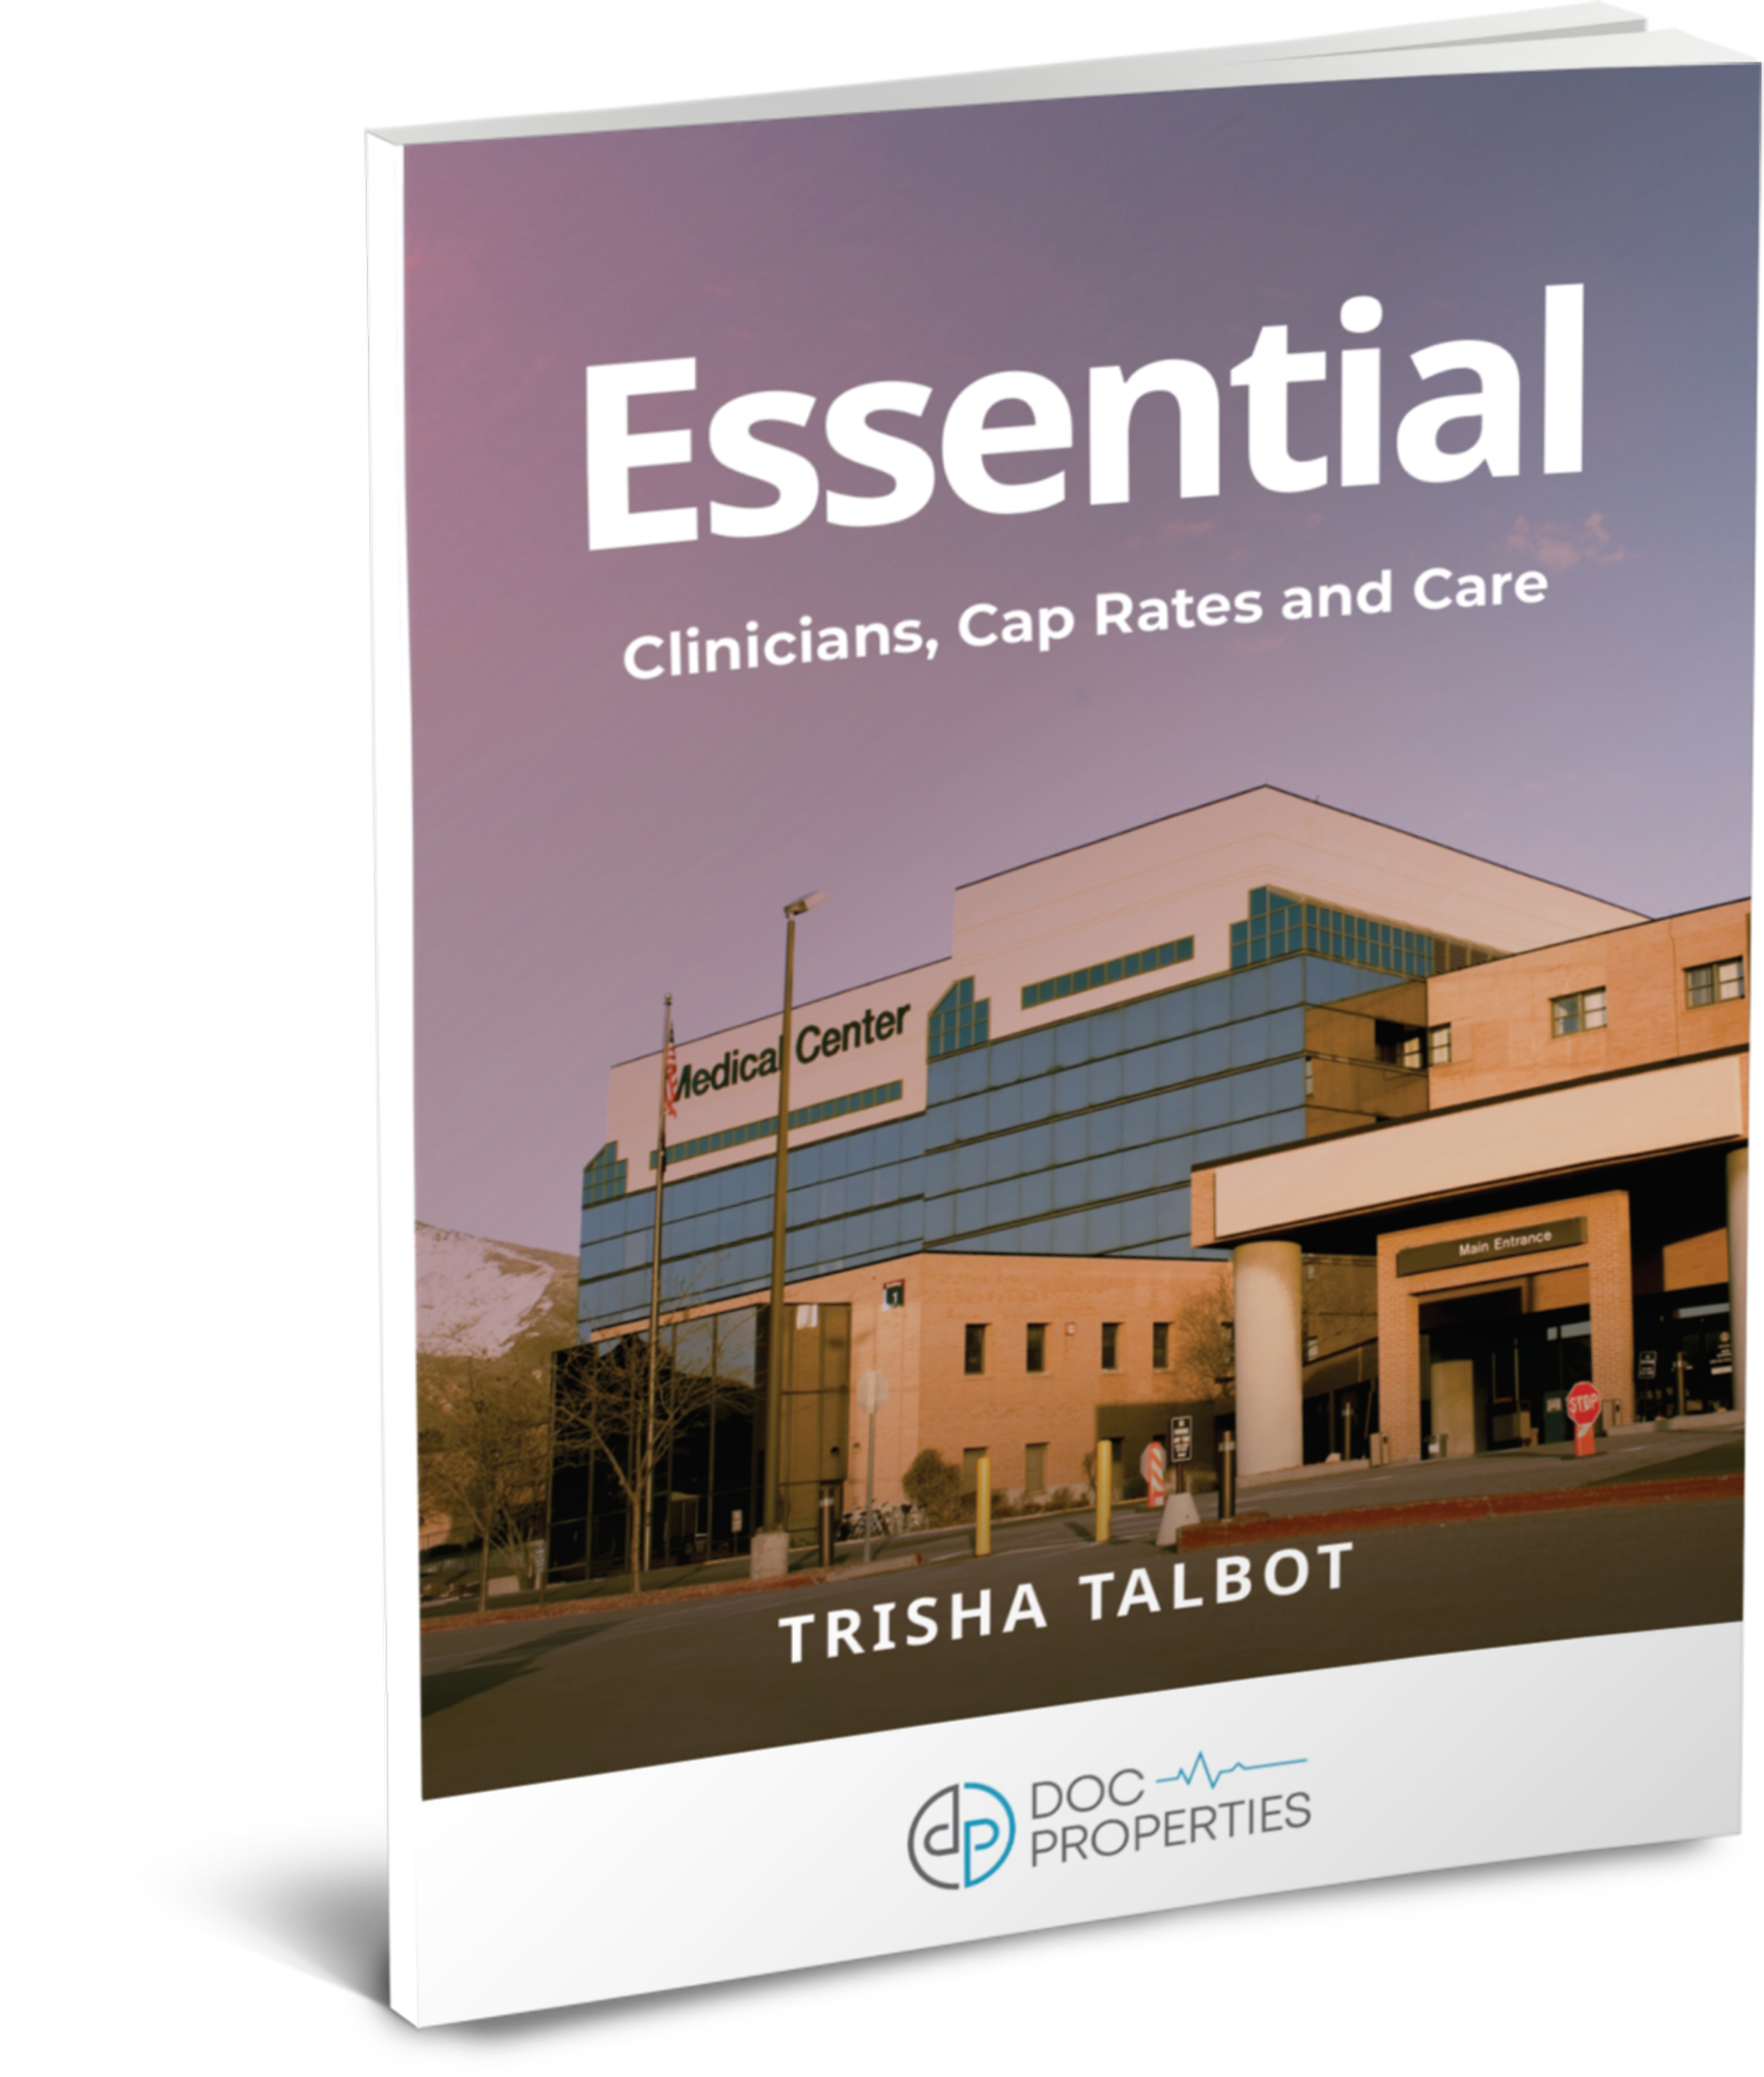 Essential by Trisha Talbot